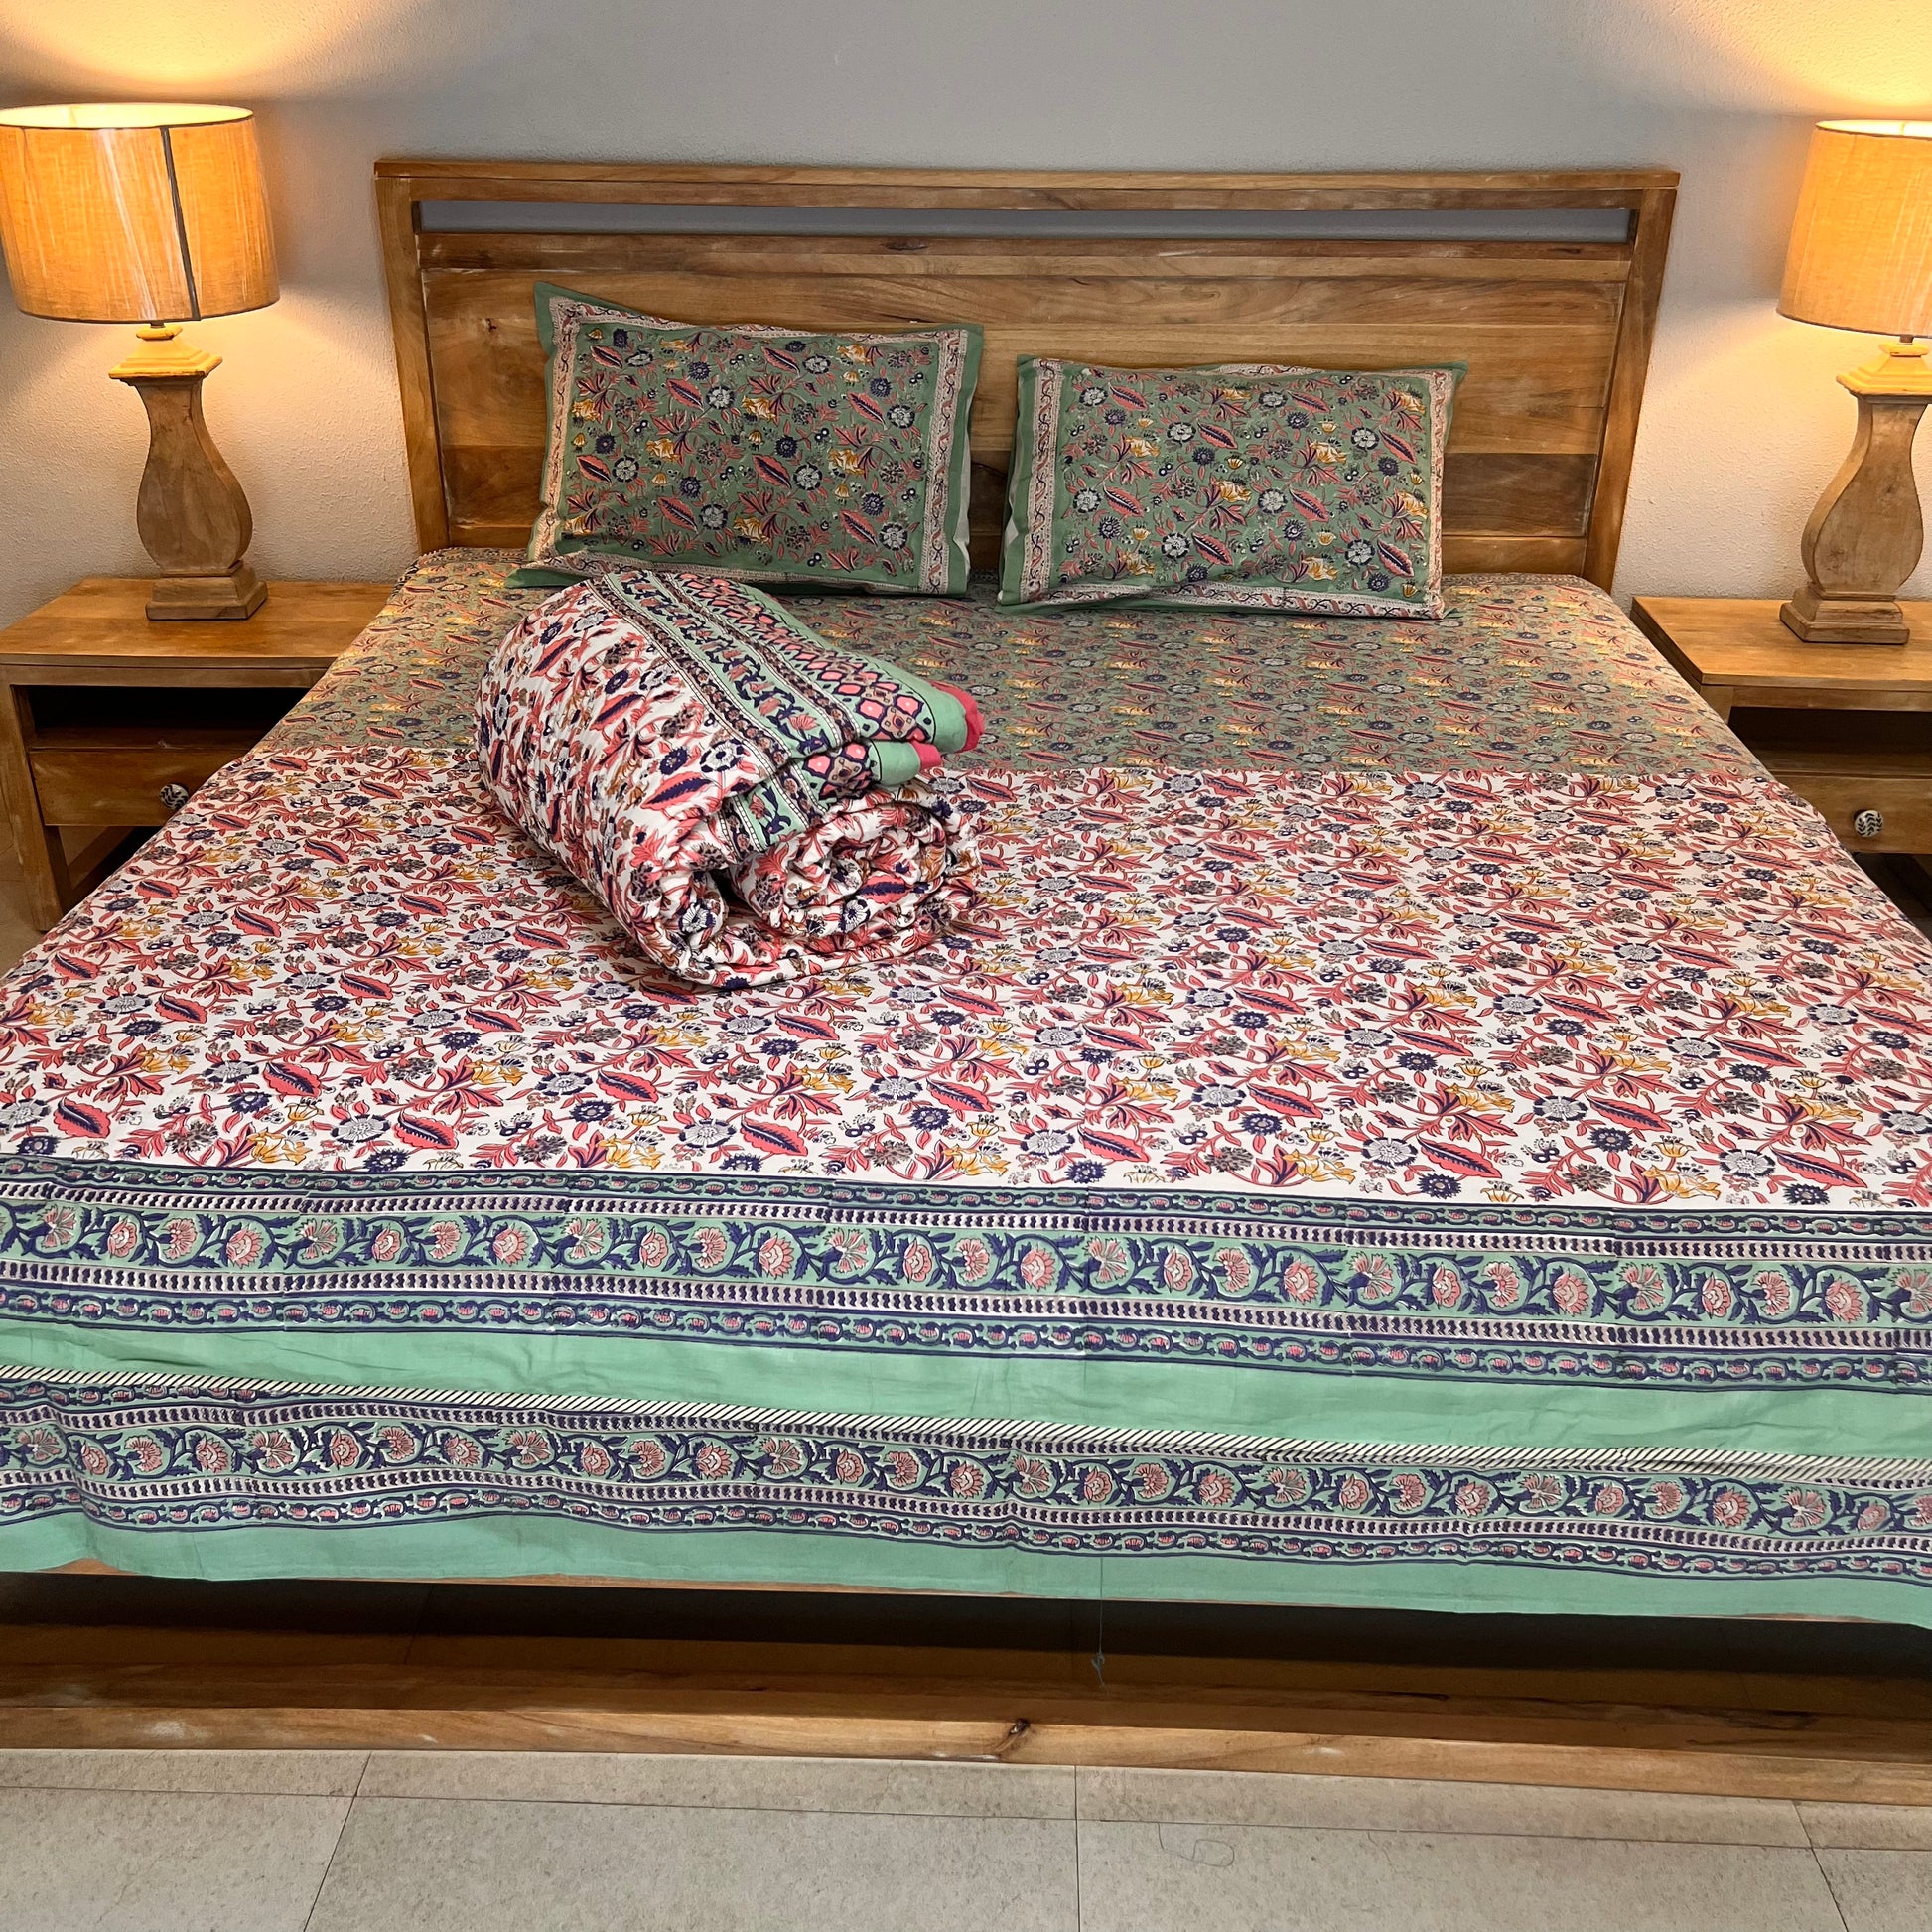 Neelofar's  block printed double bed comforter